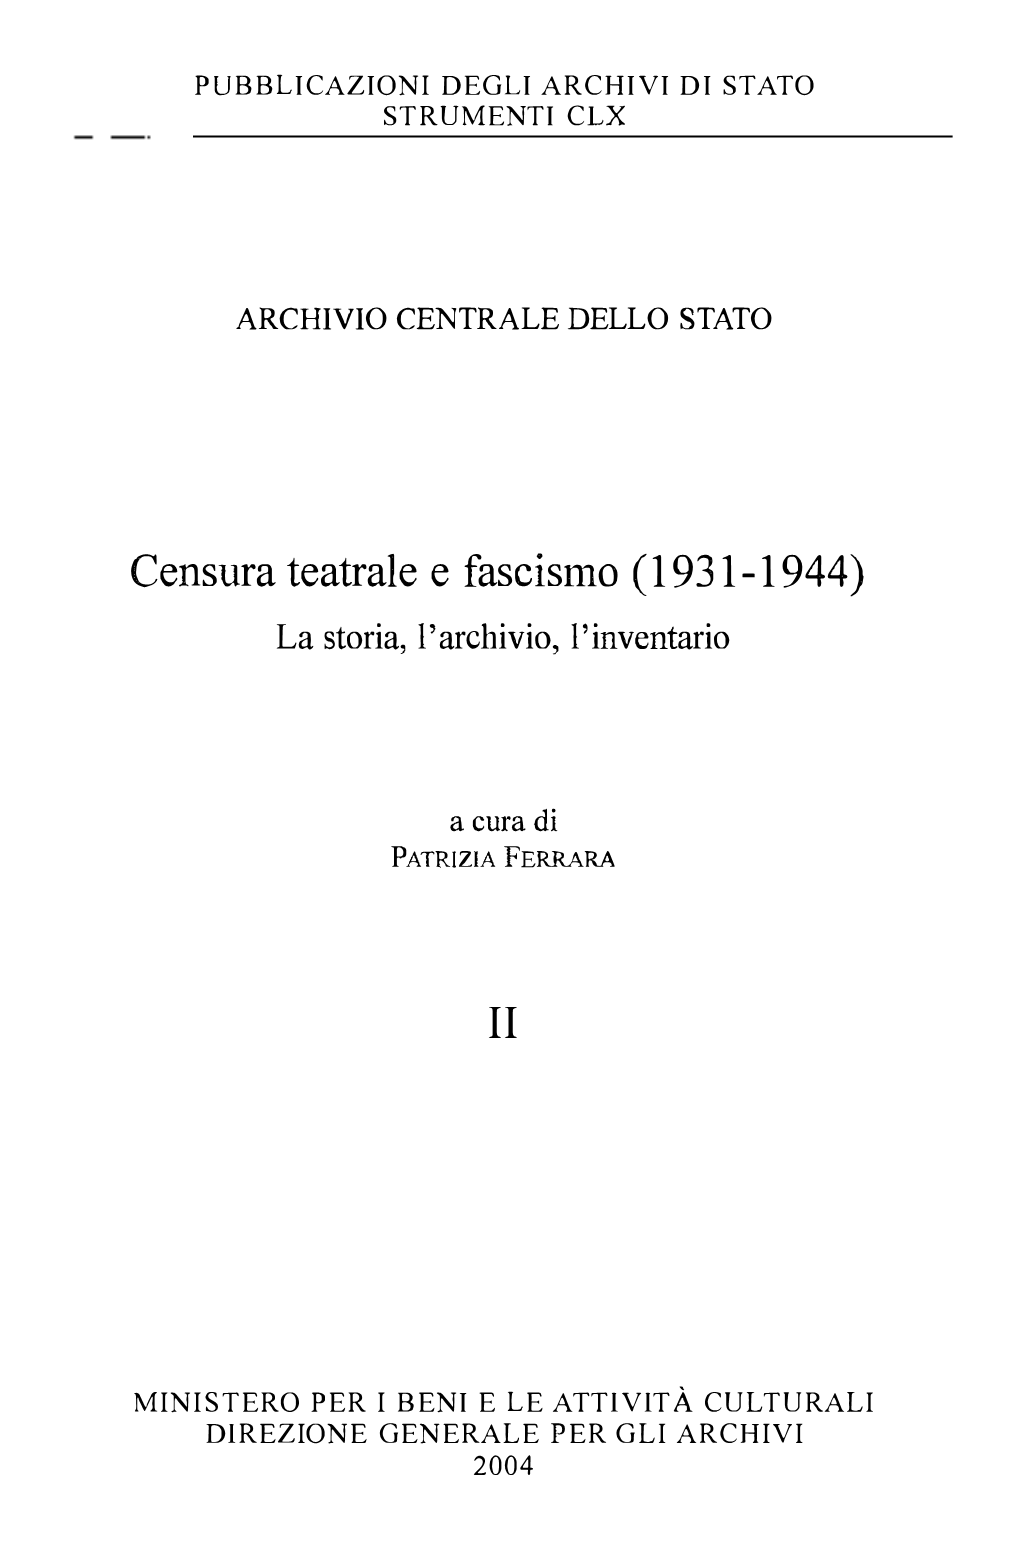 Censura Teatrale E Fascismo (1931-1944) La Storia, L'archivio, L'inventario